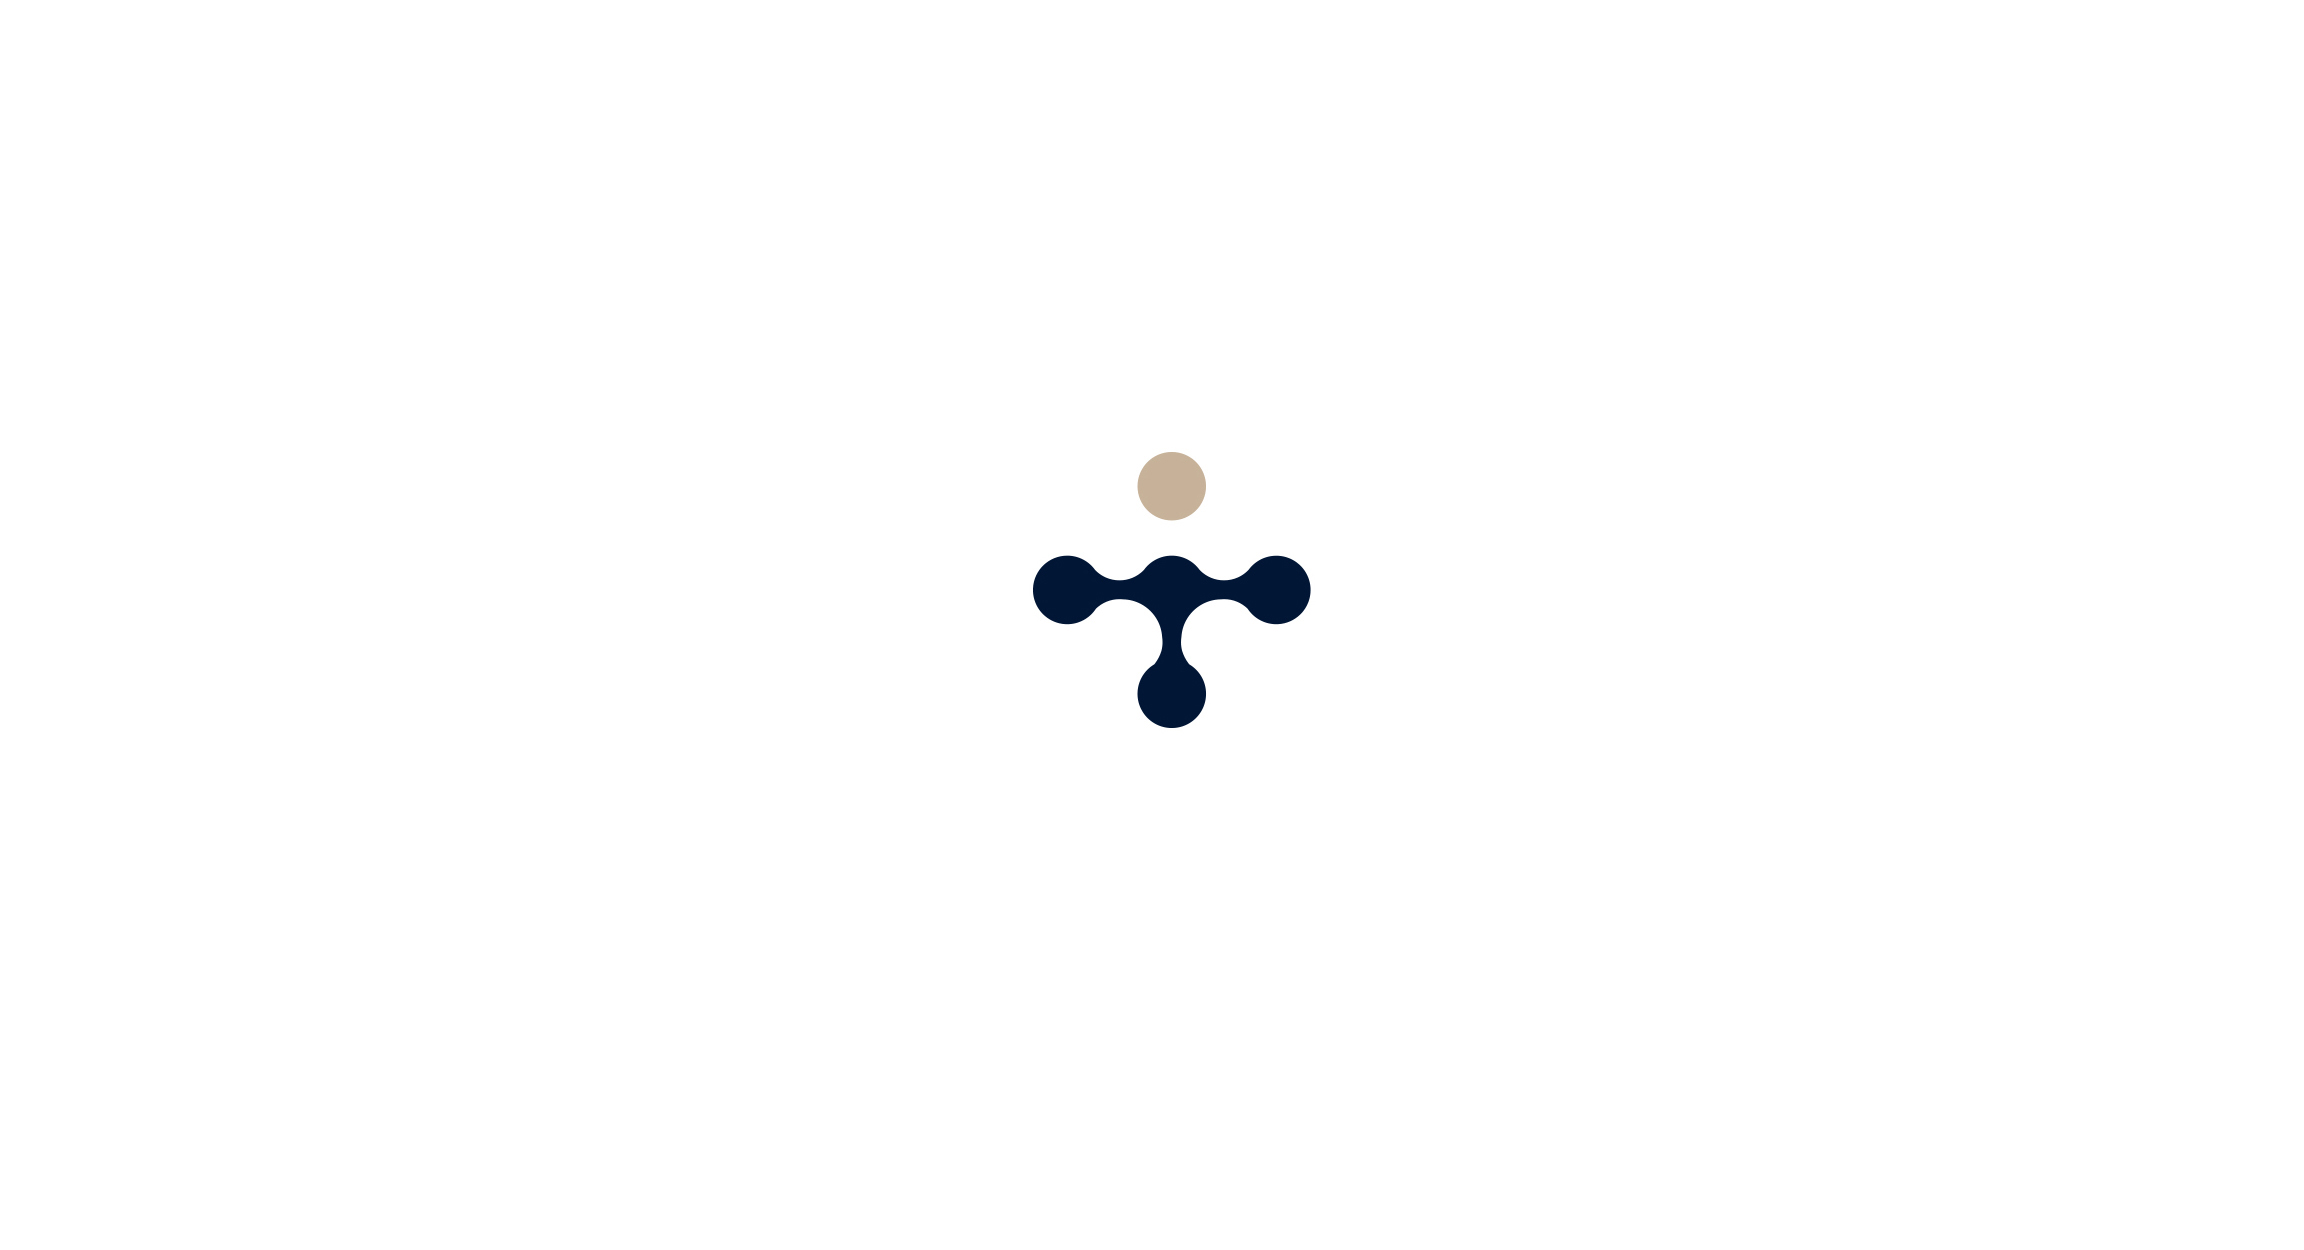 Разработка логотипа и фирменного стиля фирмы. Графический дизайн | Valido Architects 